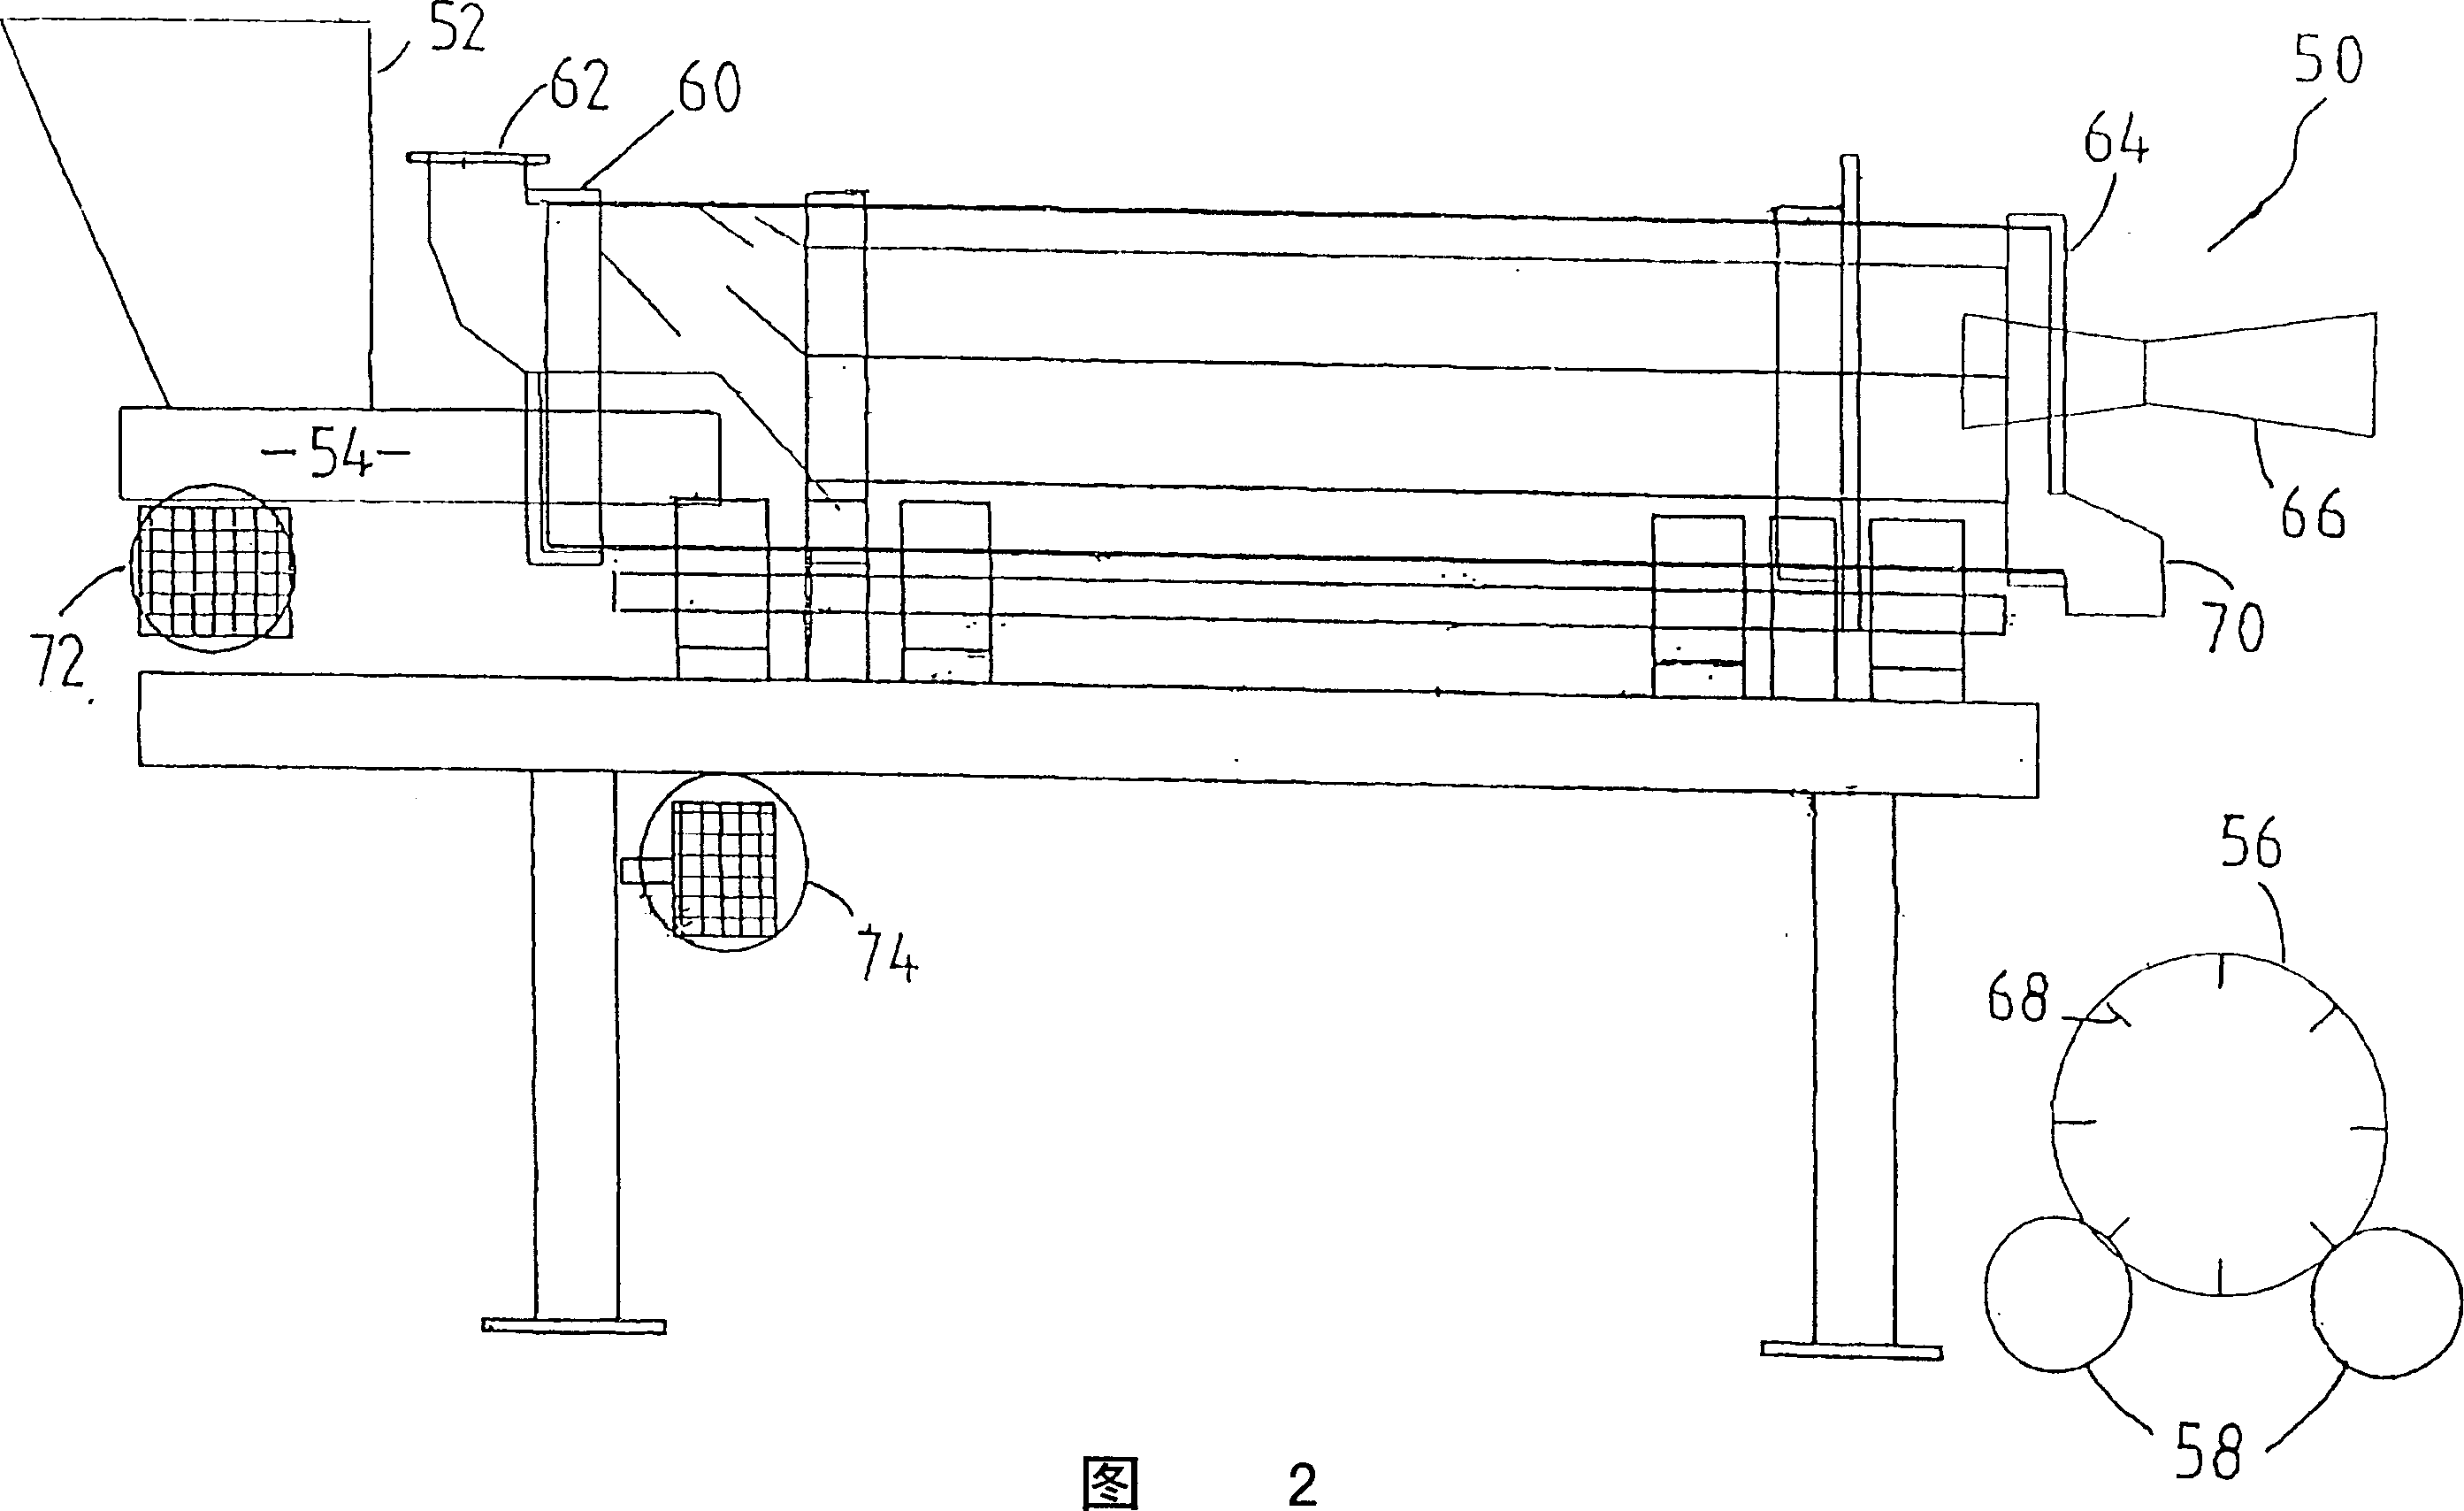 Water distillation system